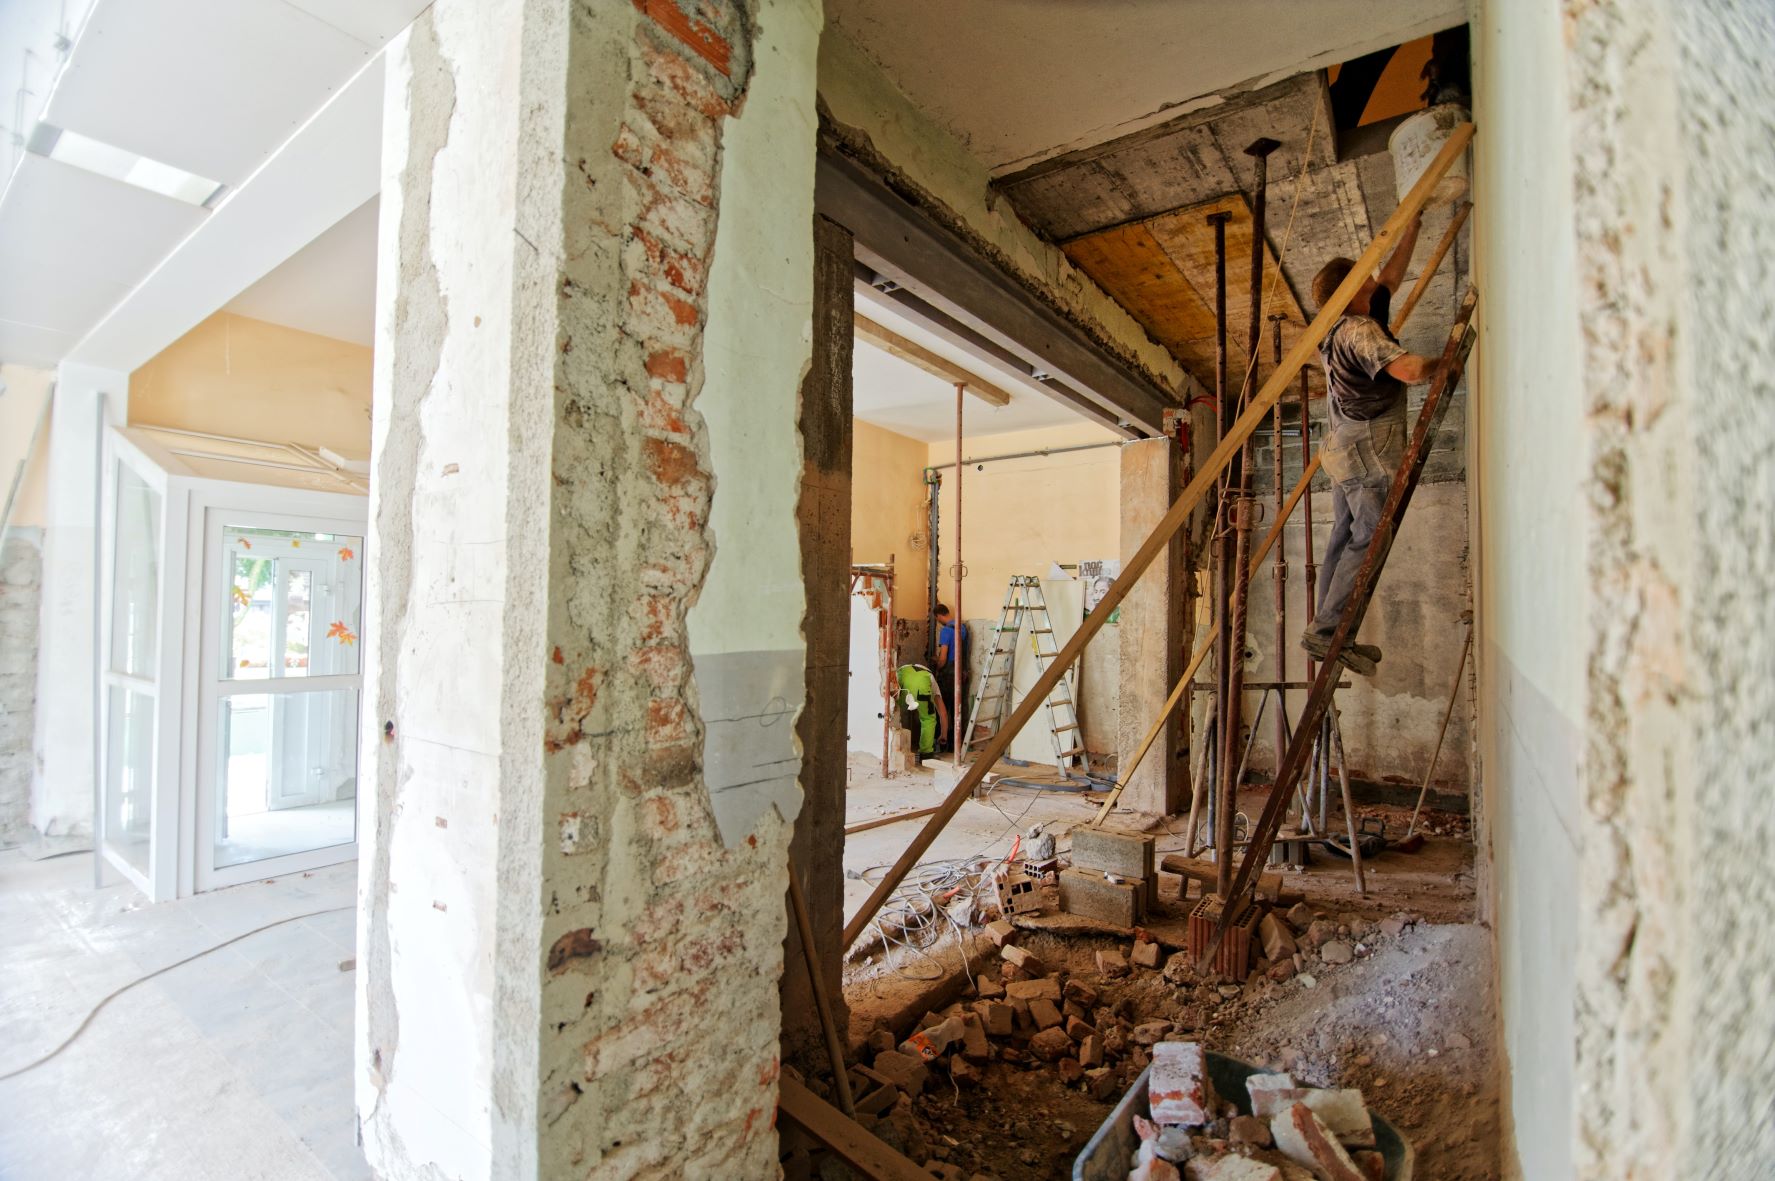 Het Brussels Gewest lanceert het ECORENO-krediet: lage rentevoet van 0 tot 2% voor de renovatie van woningen